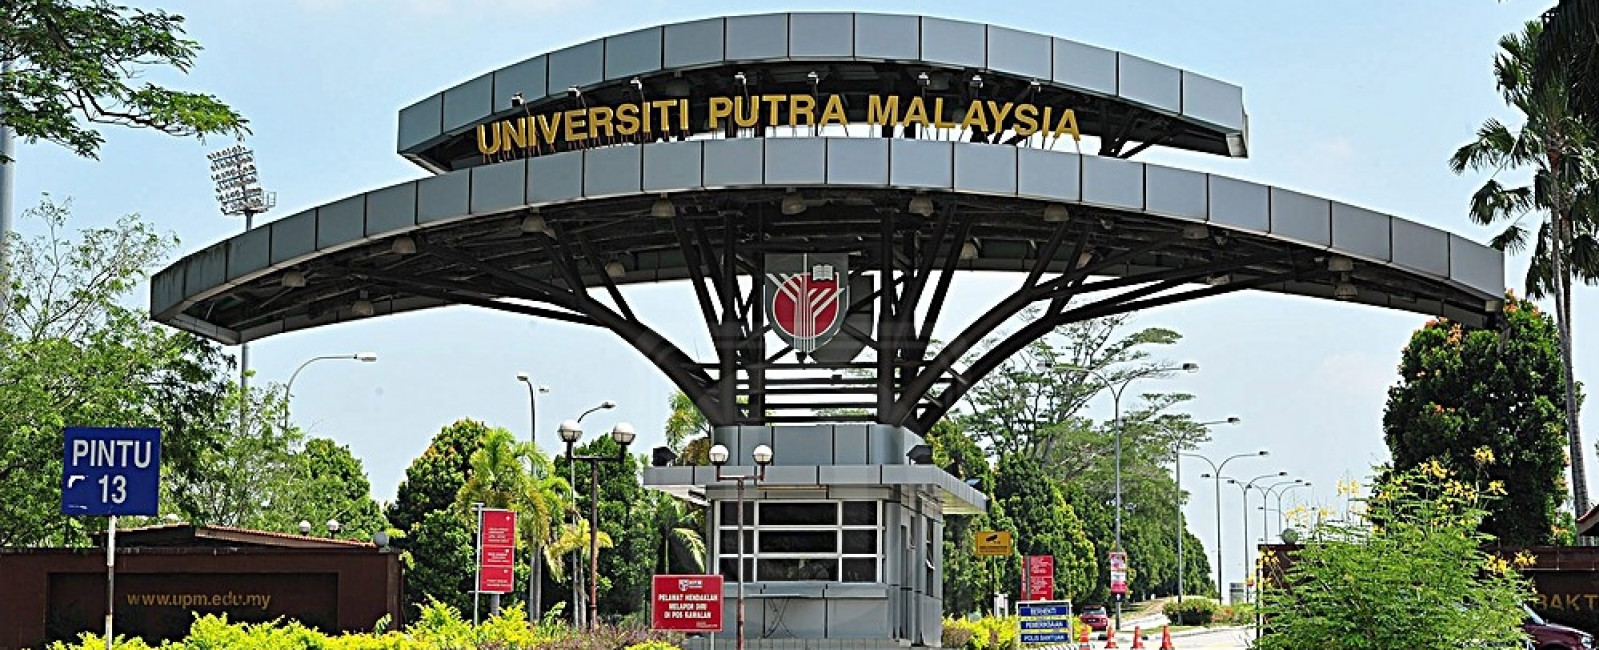 Universiti Putra Malaysia | MyCompass